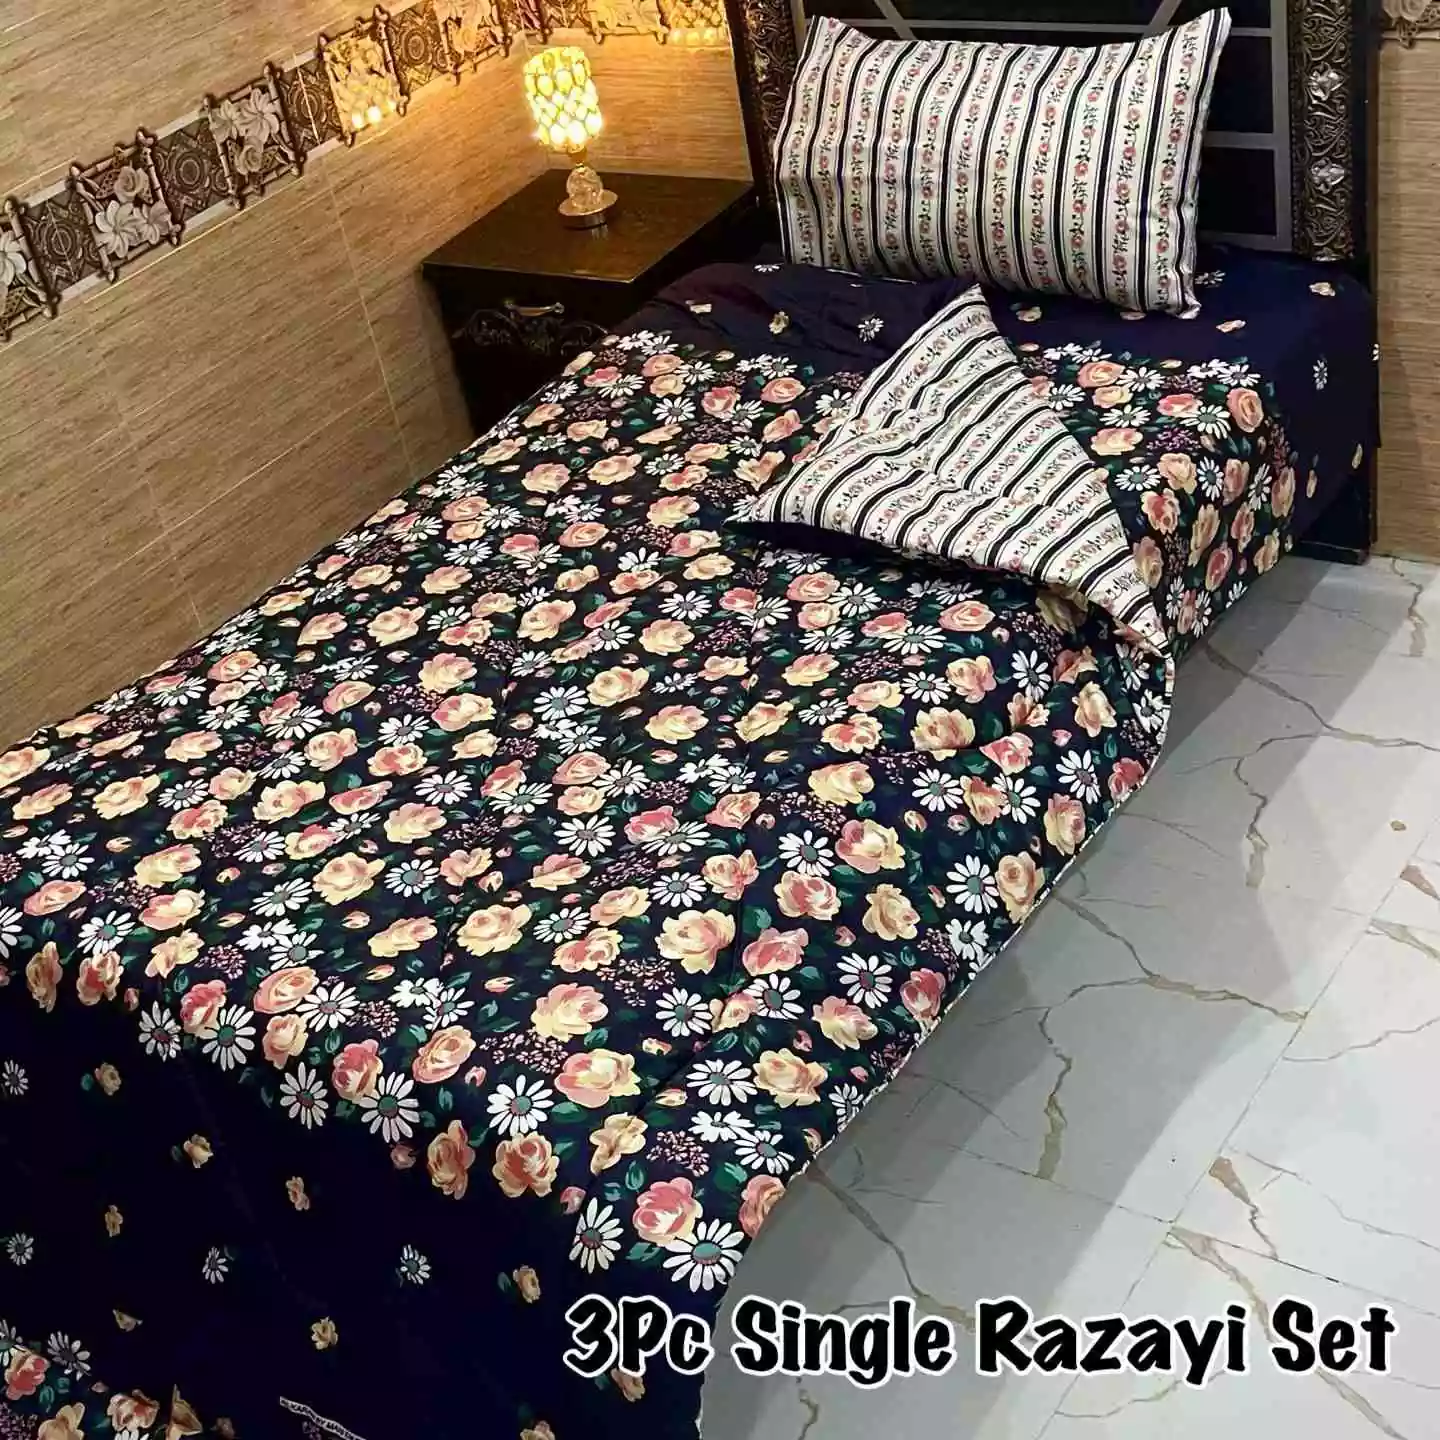 DF-VRSSB-8: DFY 3Pc Single Bed Vicky Razai Set